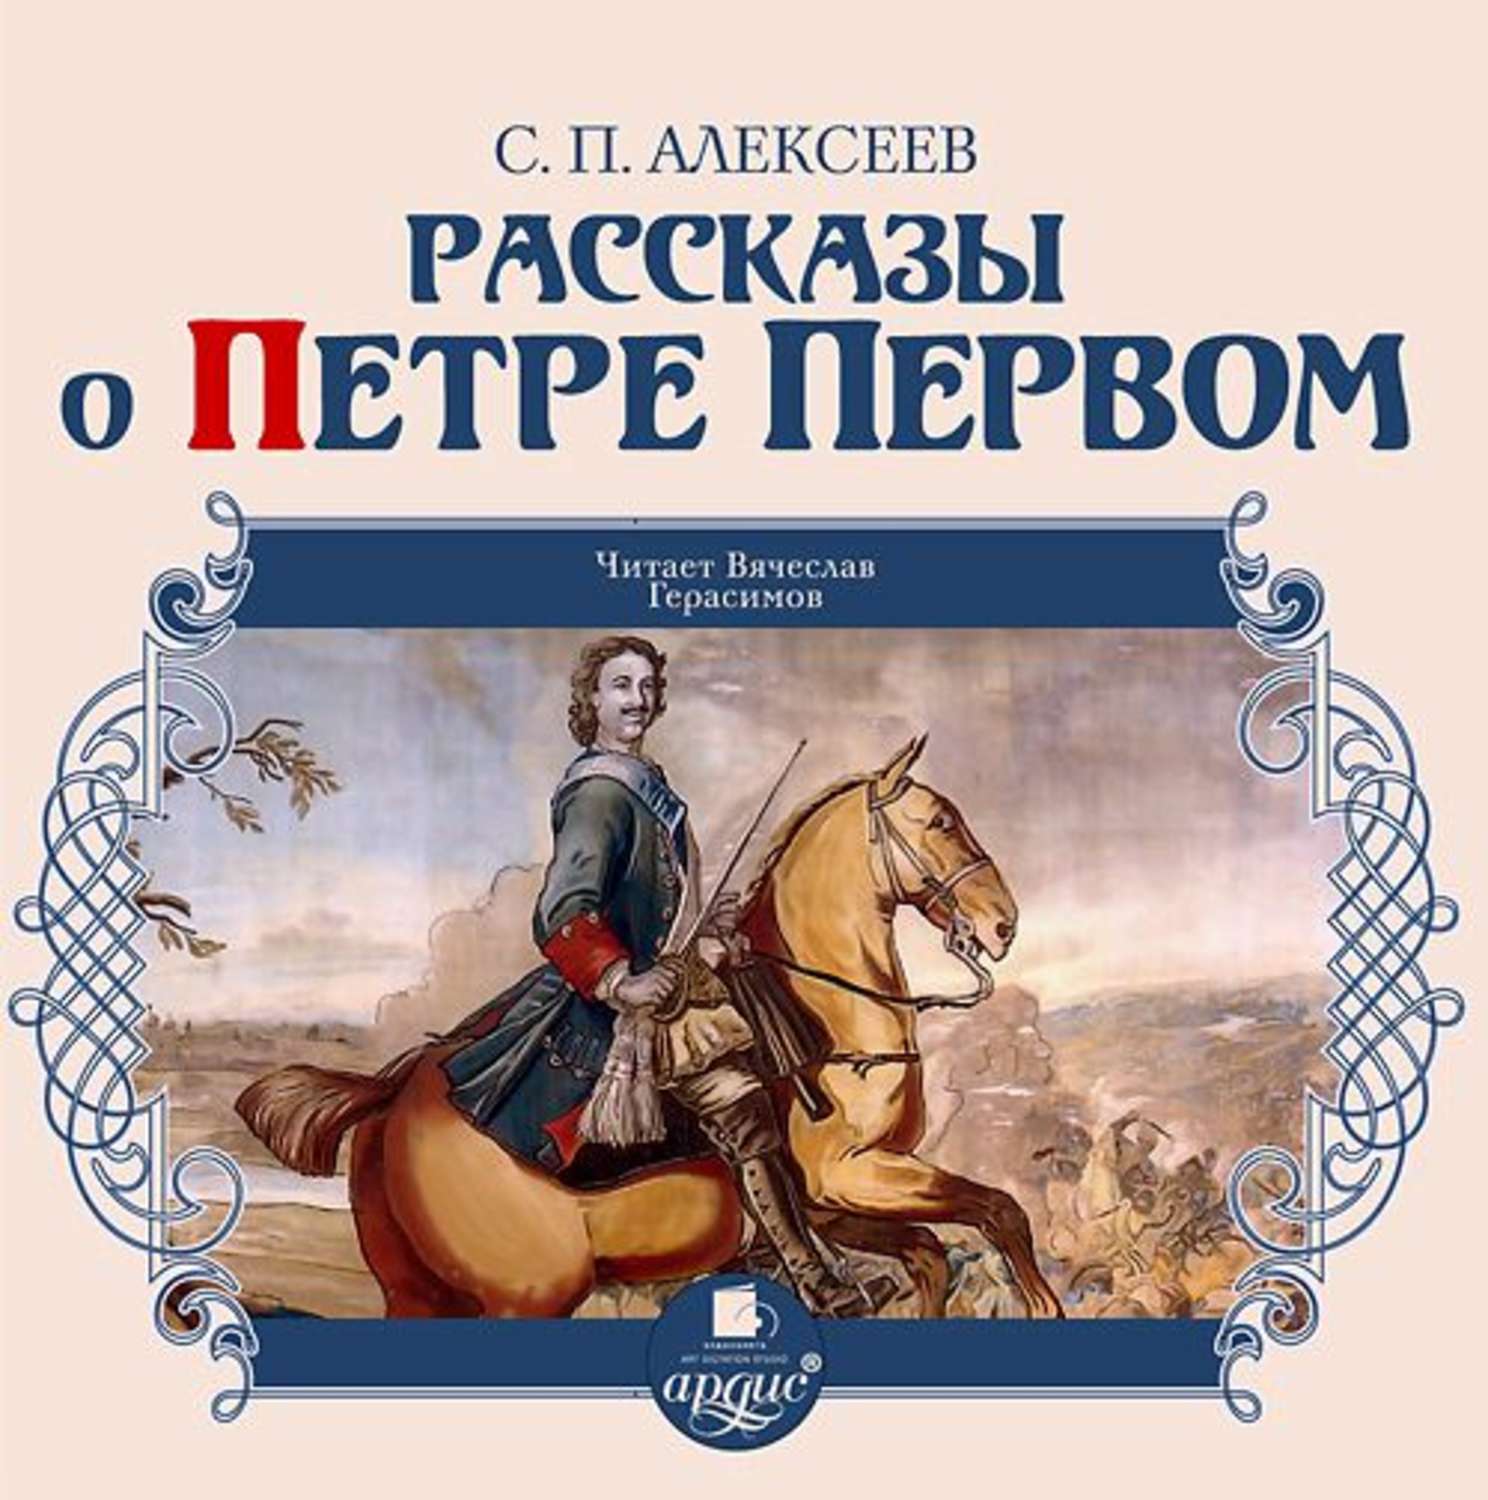 Аудиокнига про россию. Книги о Петре первом Алексеева для детей.